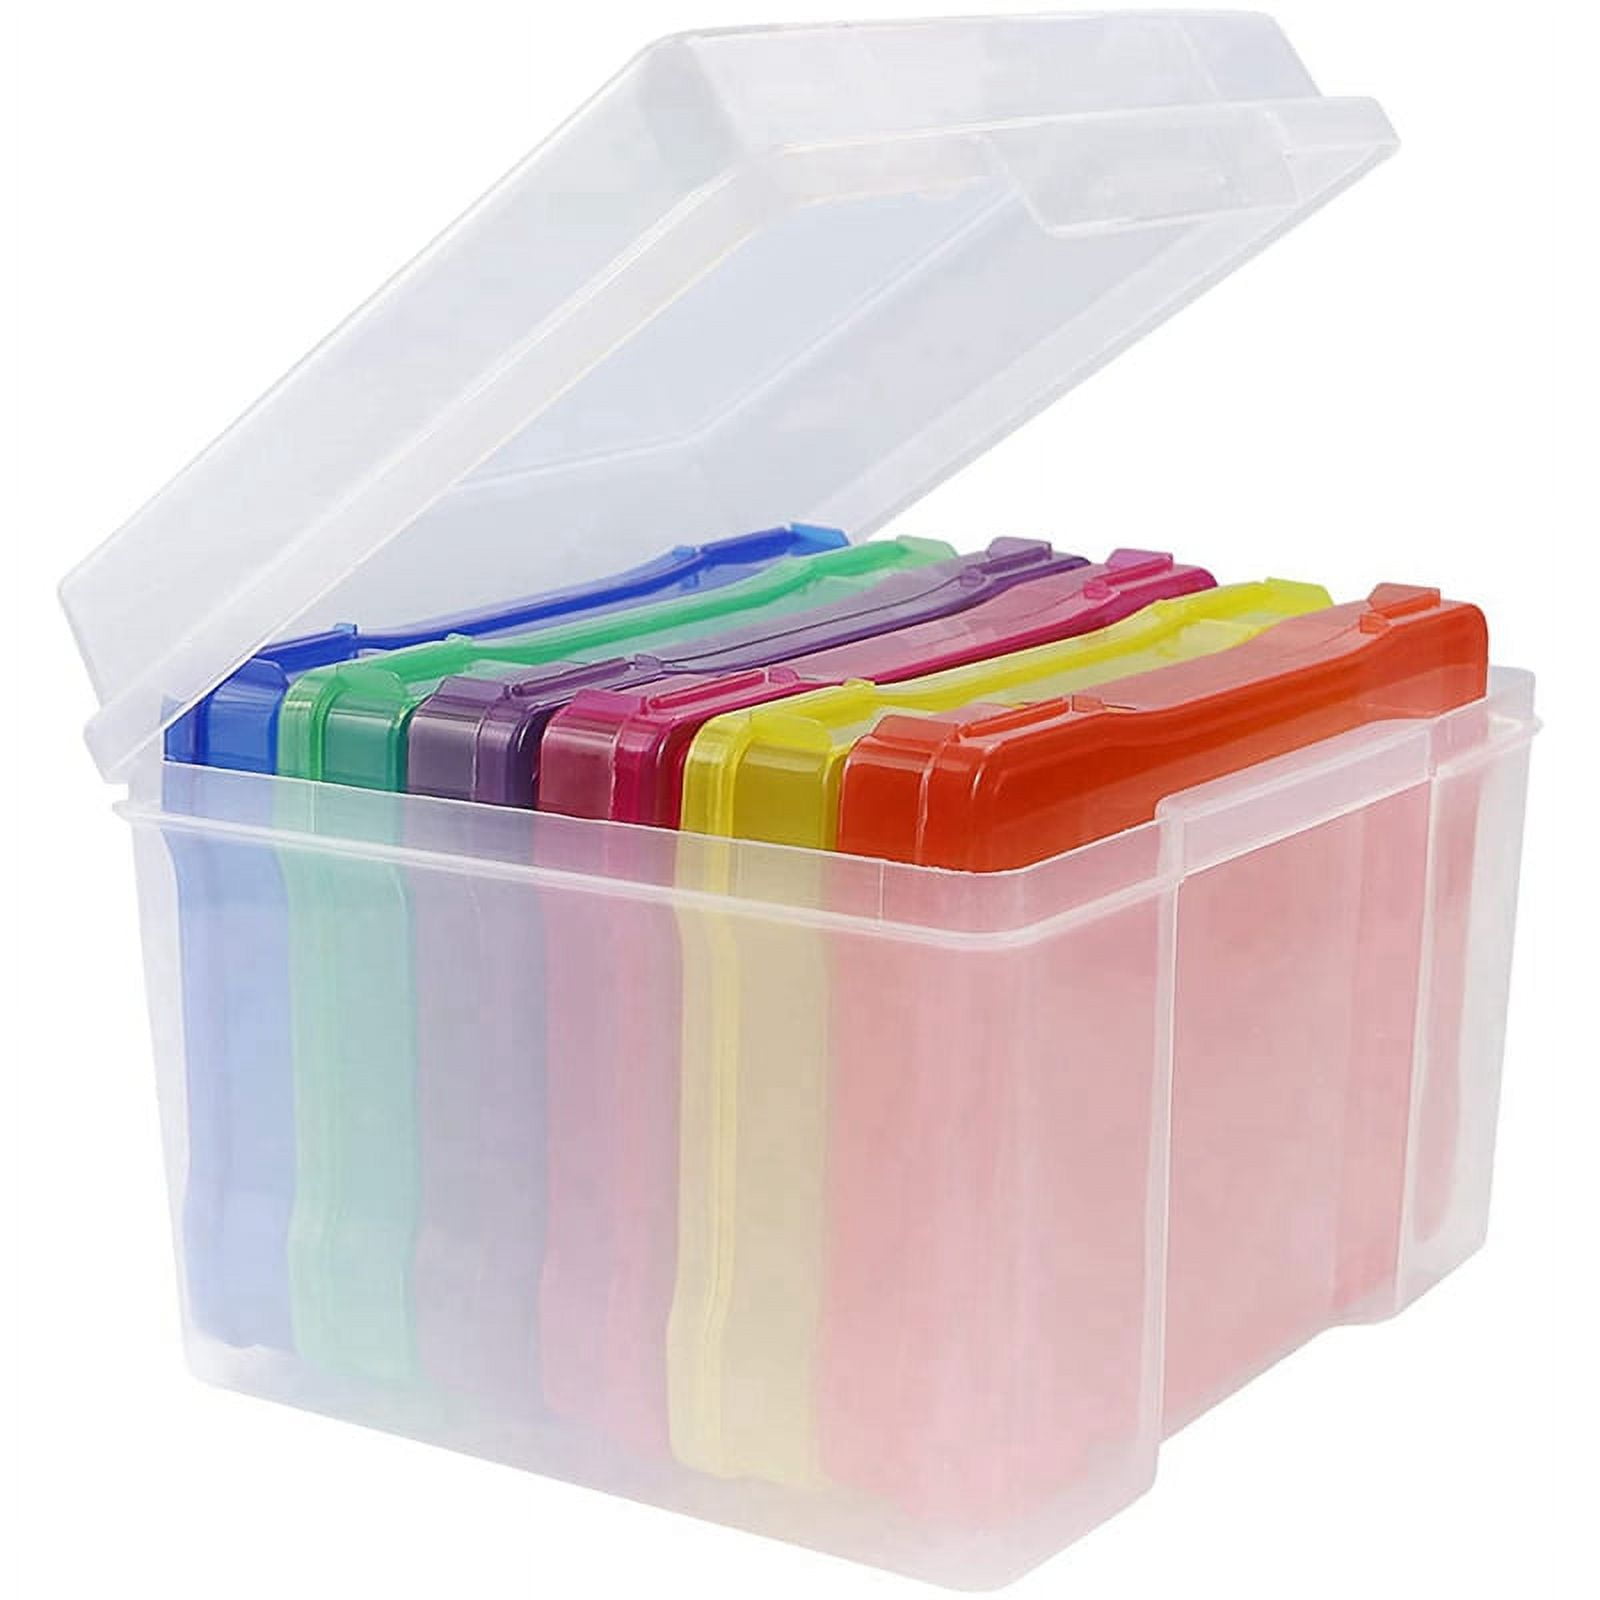 1PCS Multicolor 4x6 Photo Picture Postcard Storage Boxes Plastic Organizer  Case